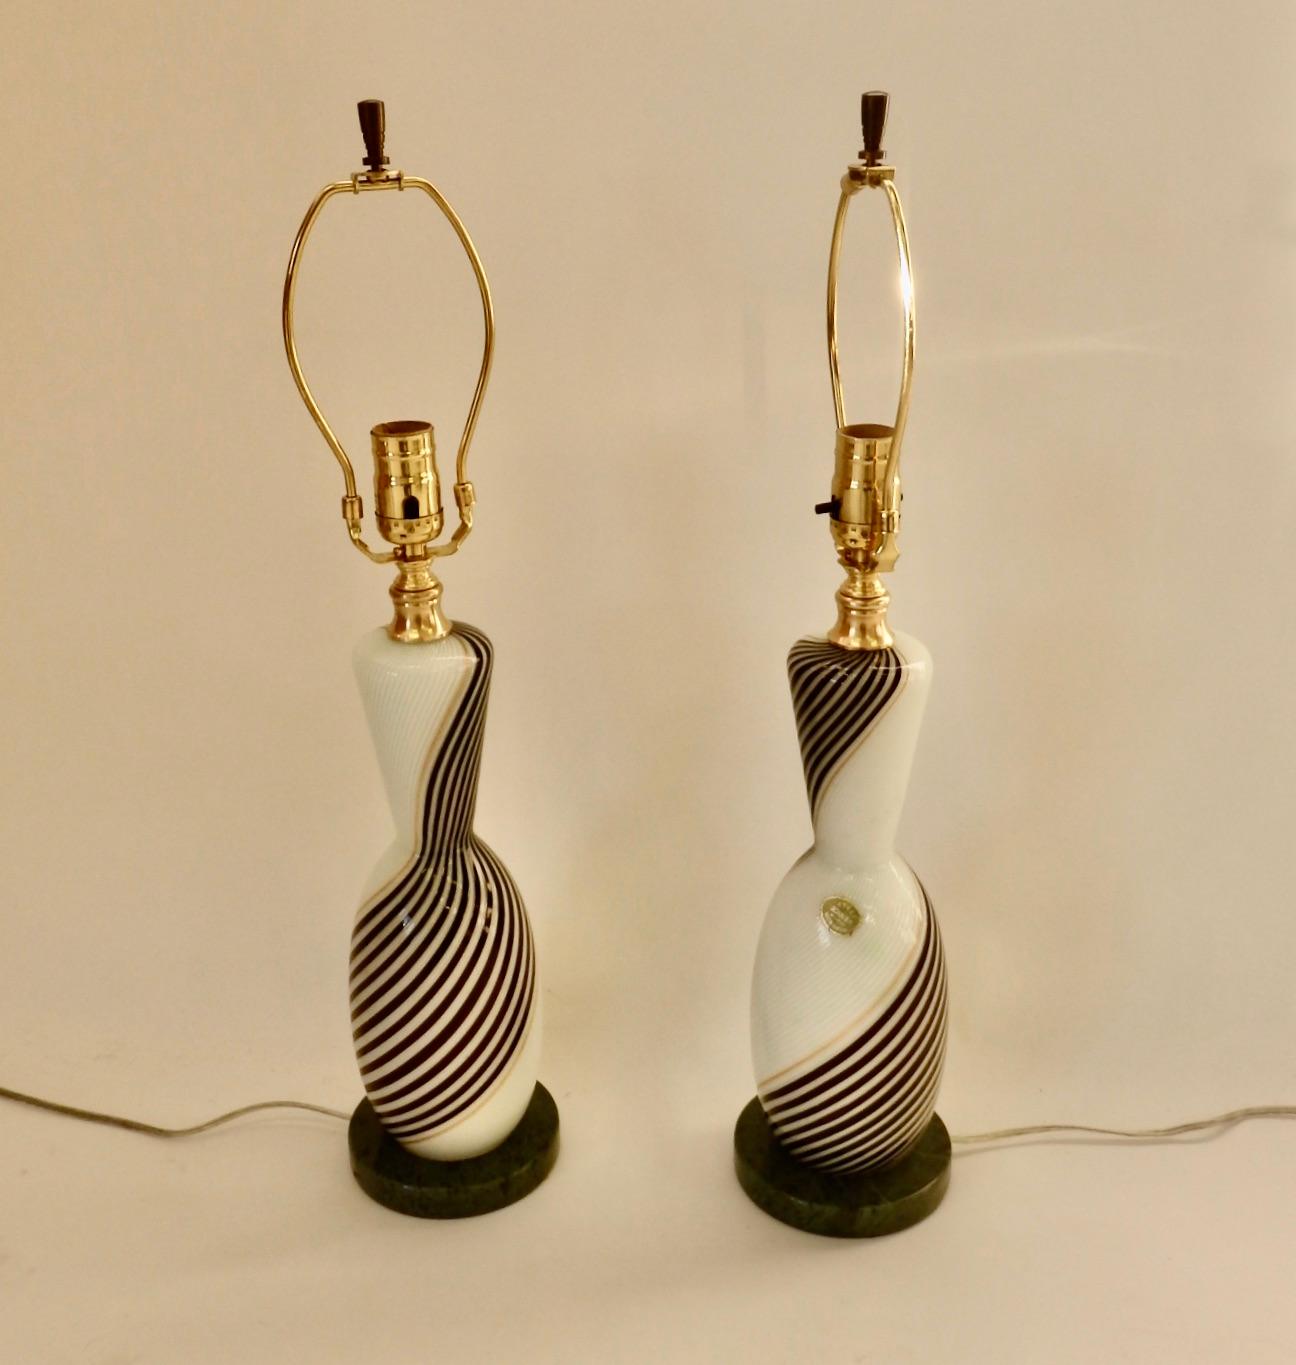 Ein Paar Tischlampen von Dino Martens. Auf dem Original Label steht Murano Glas Venedig Italien. Schwarzer und weißer Wirbel mit goldenen Details. Frisch verdrahtet auf grünen Marmorsockeln. Inklusive originaler Endstücke.